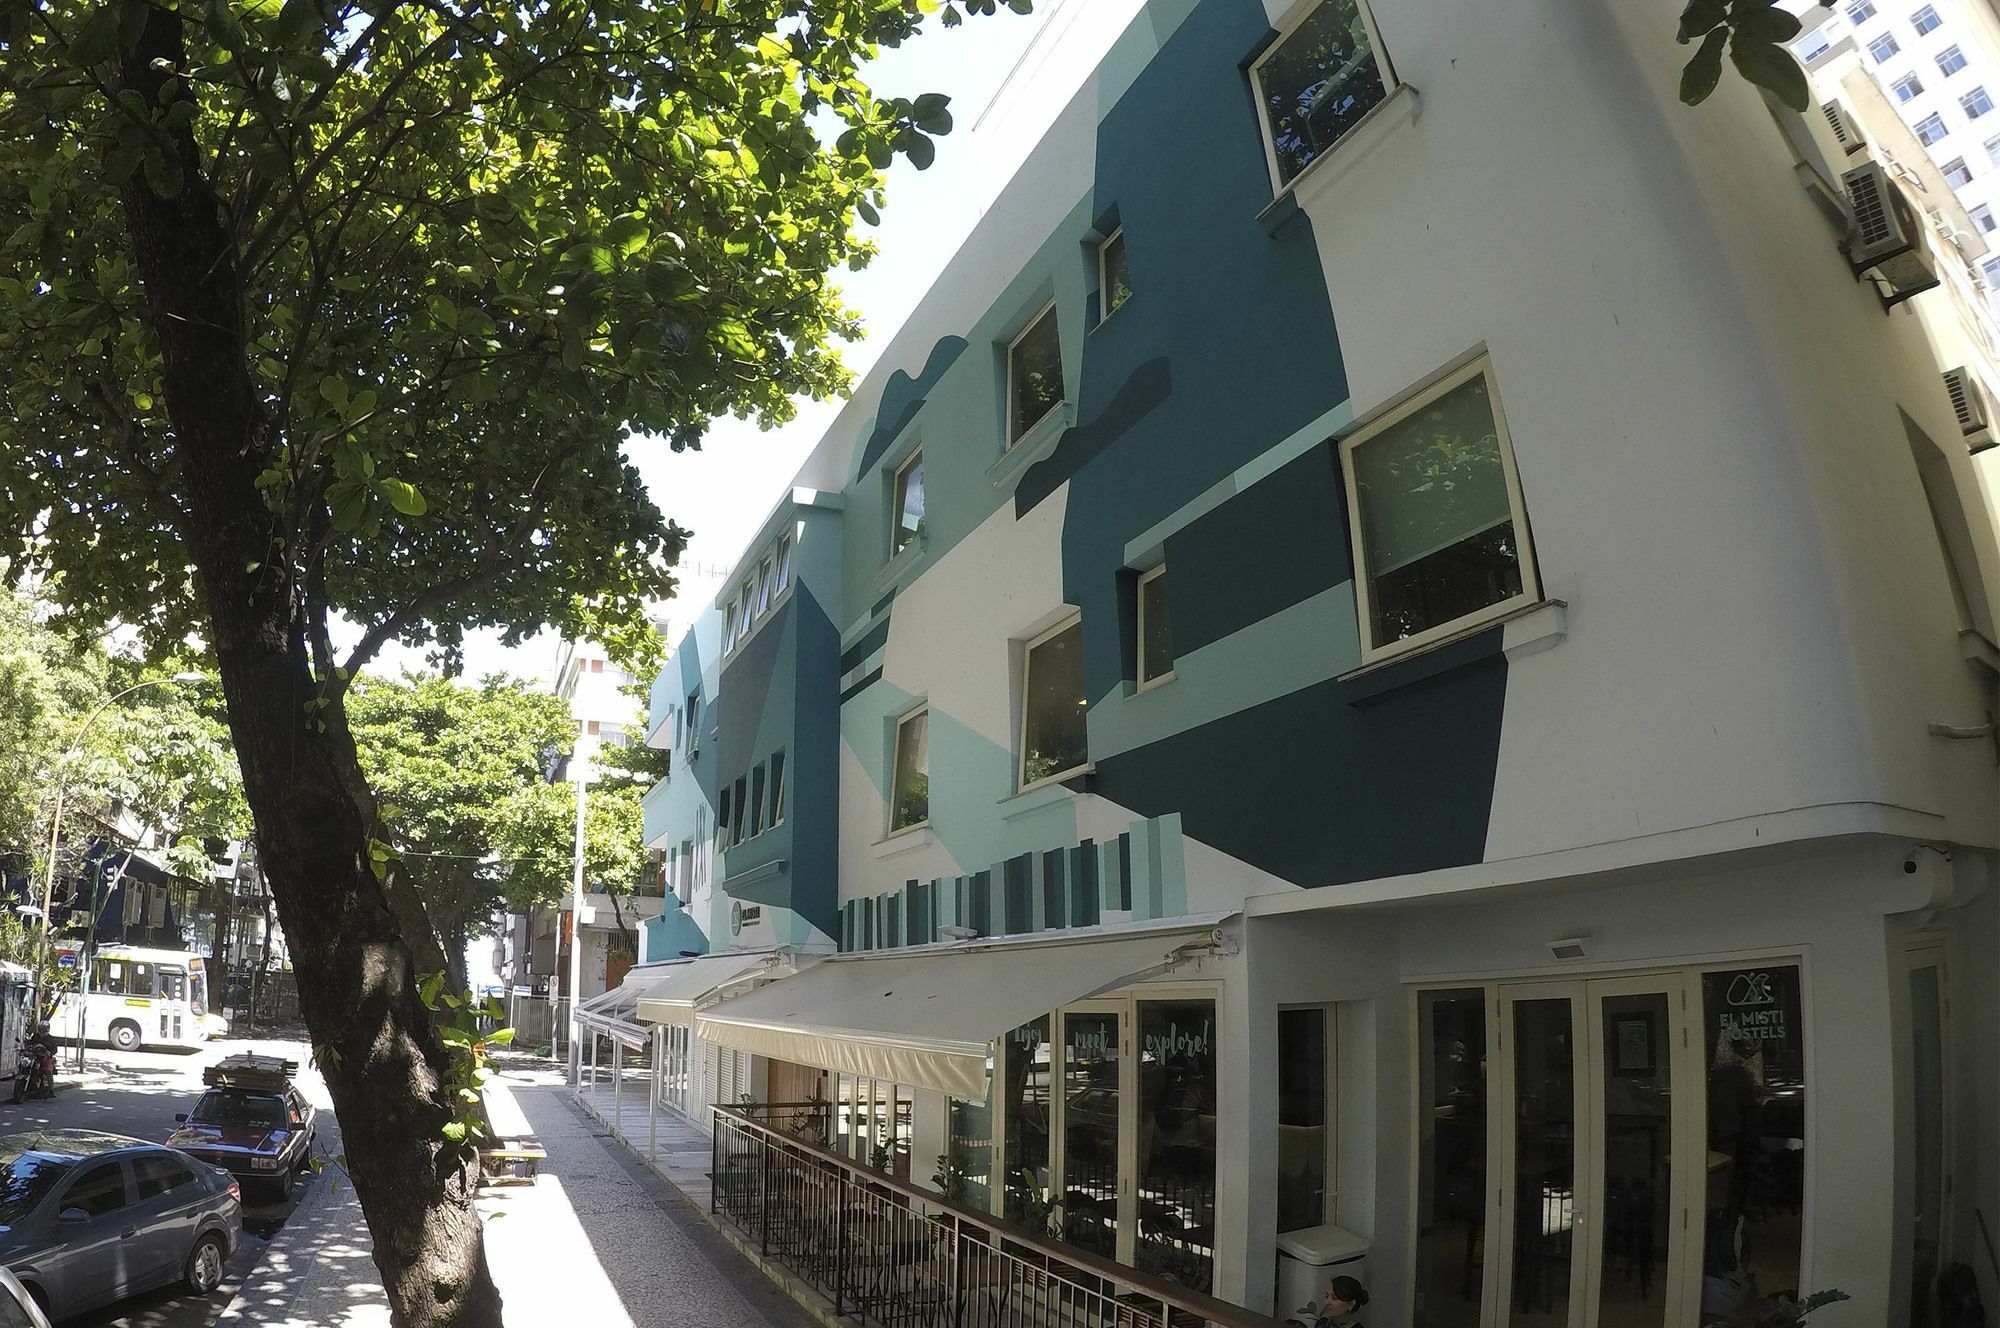 El Misti Hostel Ipanema Rio de Janeiro Zewnętrze zdjęcie